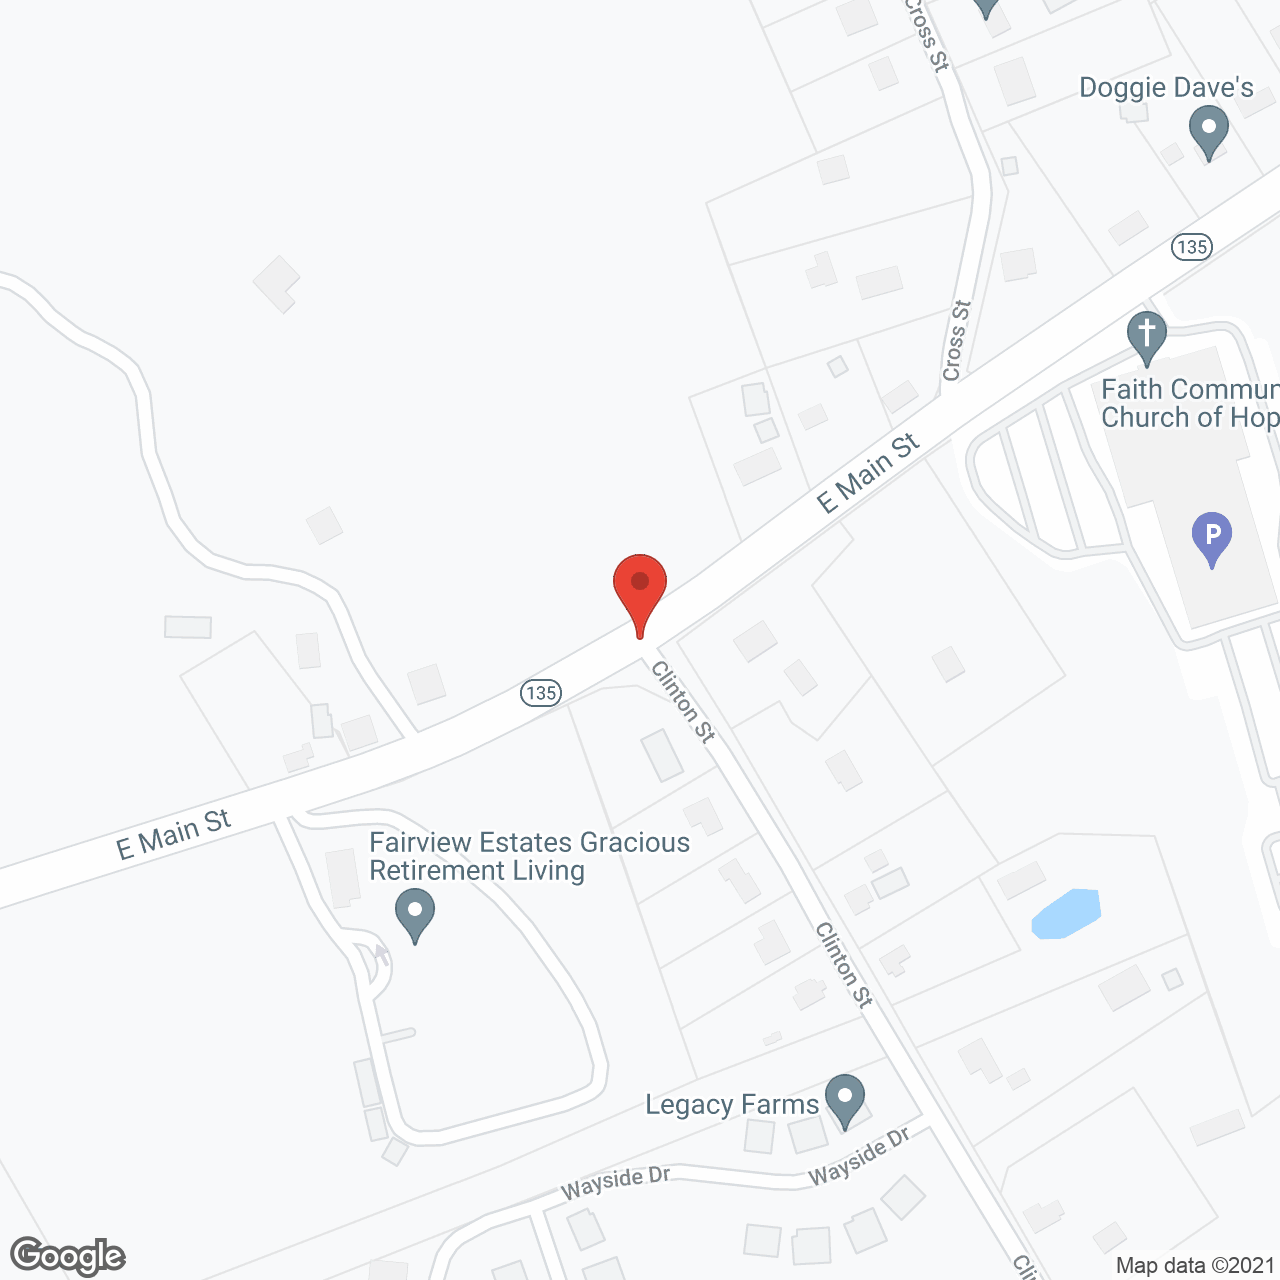 Fairview Estates in google map